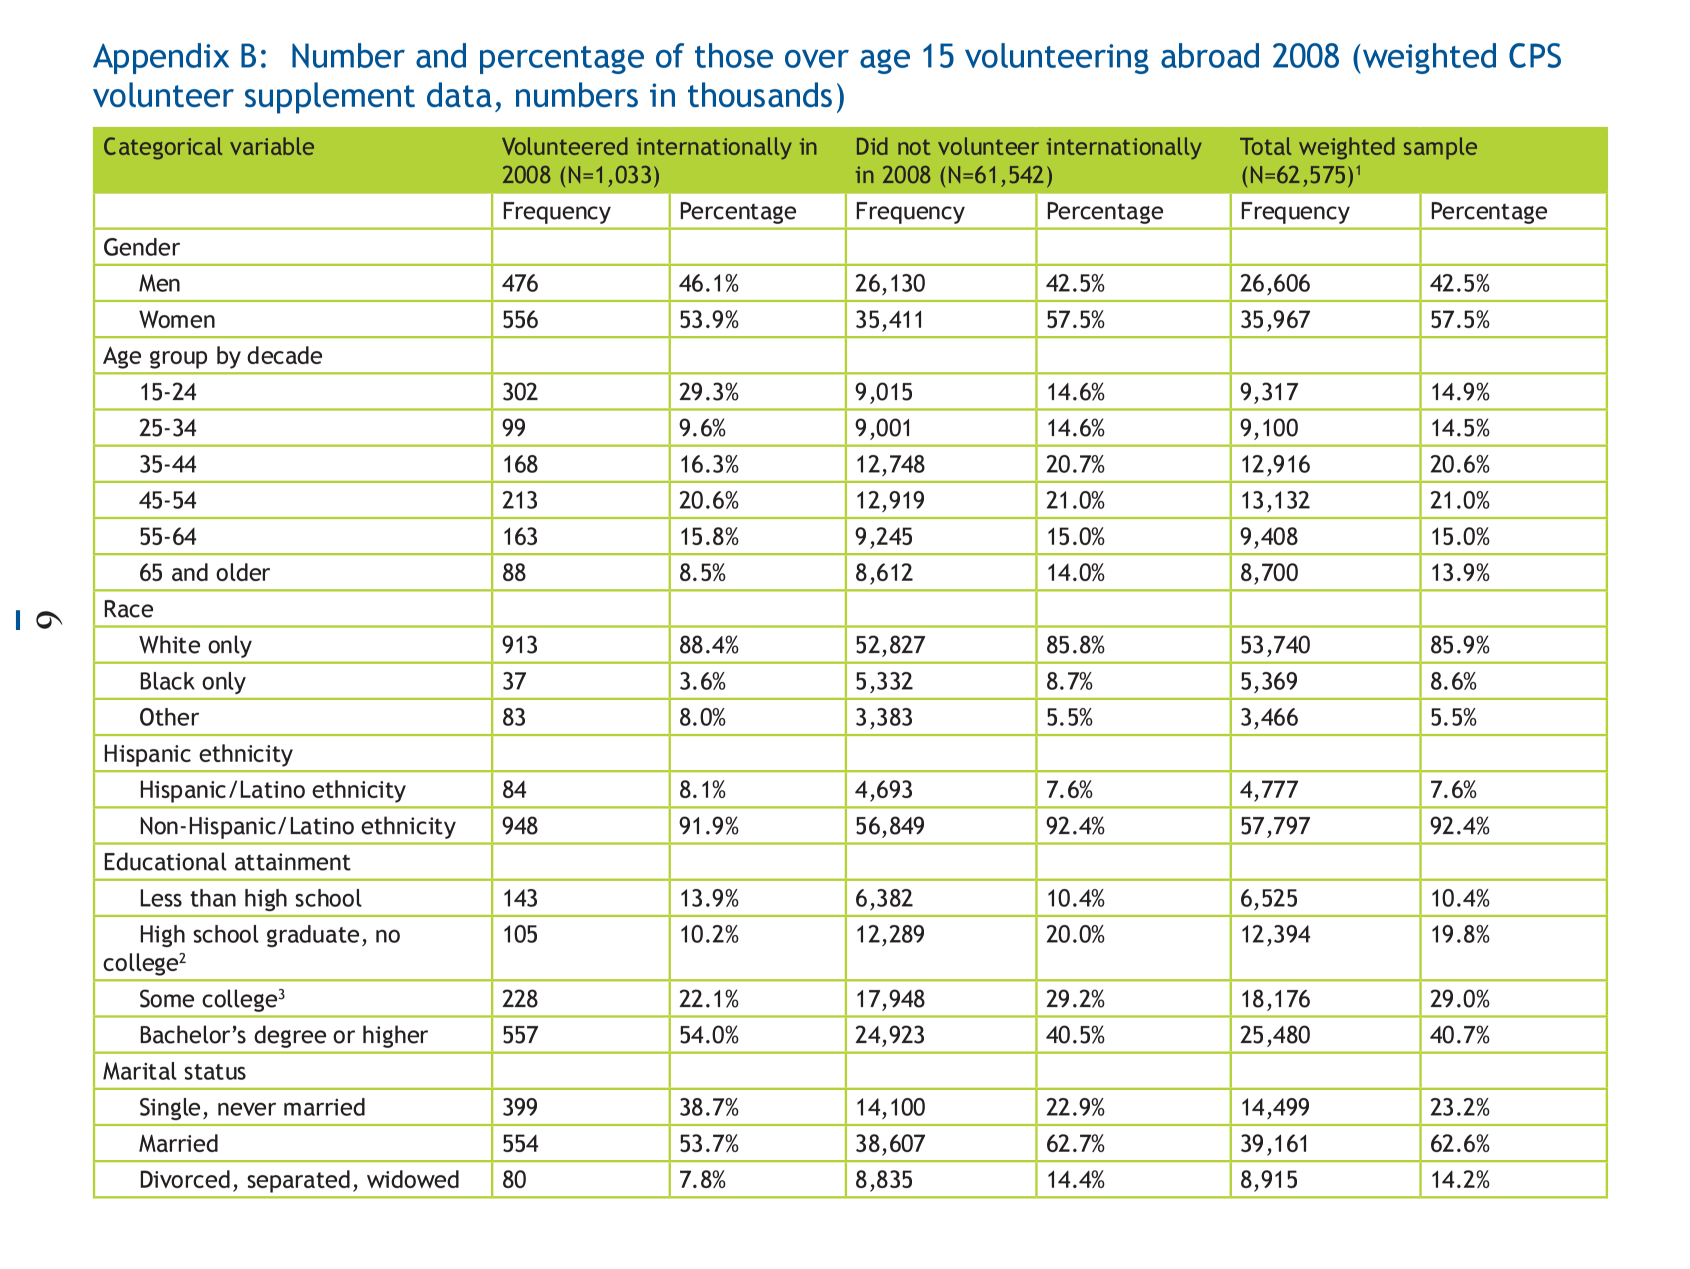 Statistics on international volunteers and voluntourism